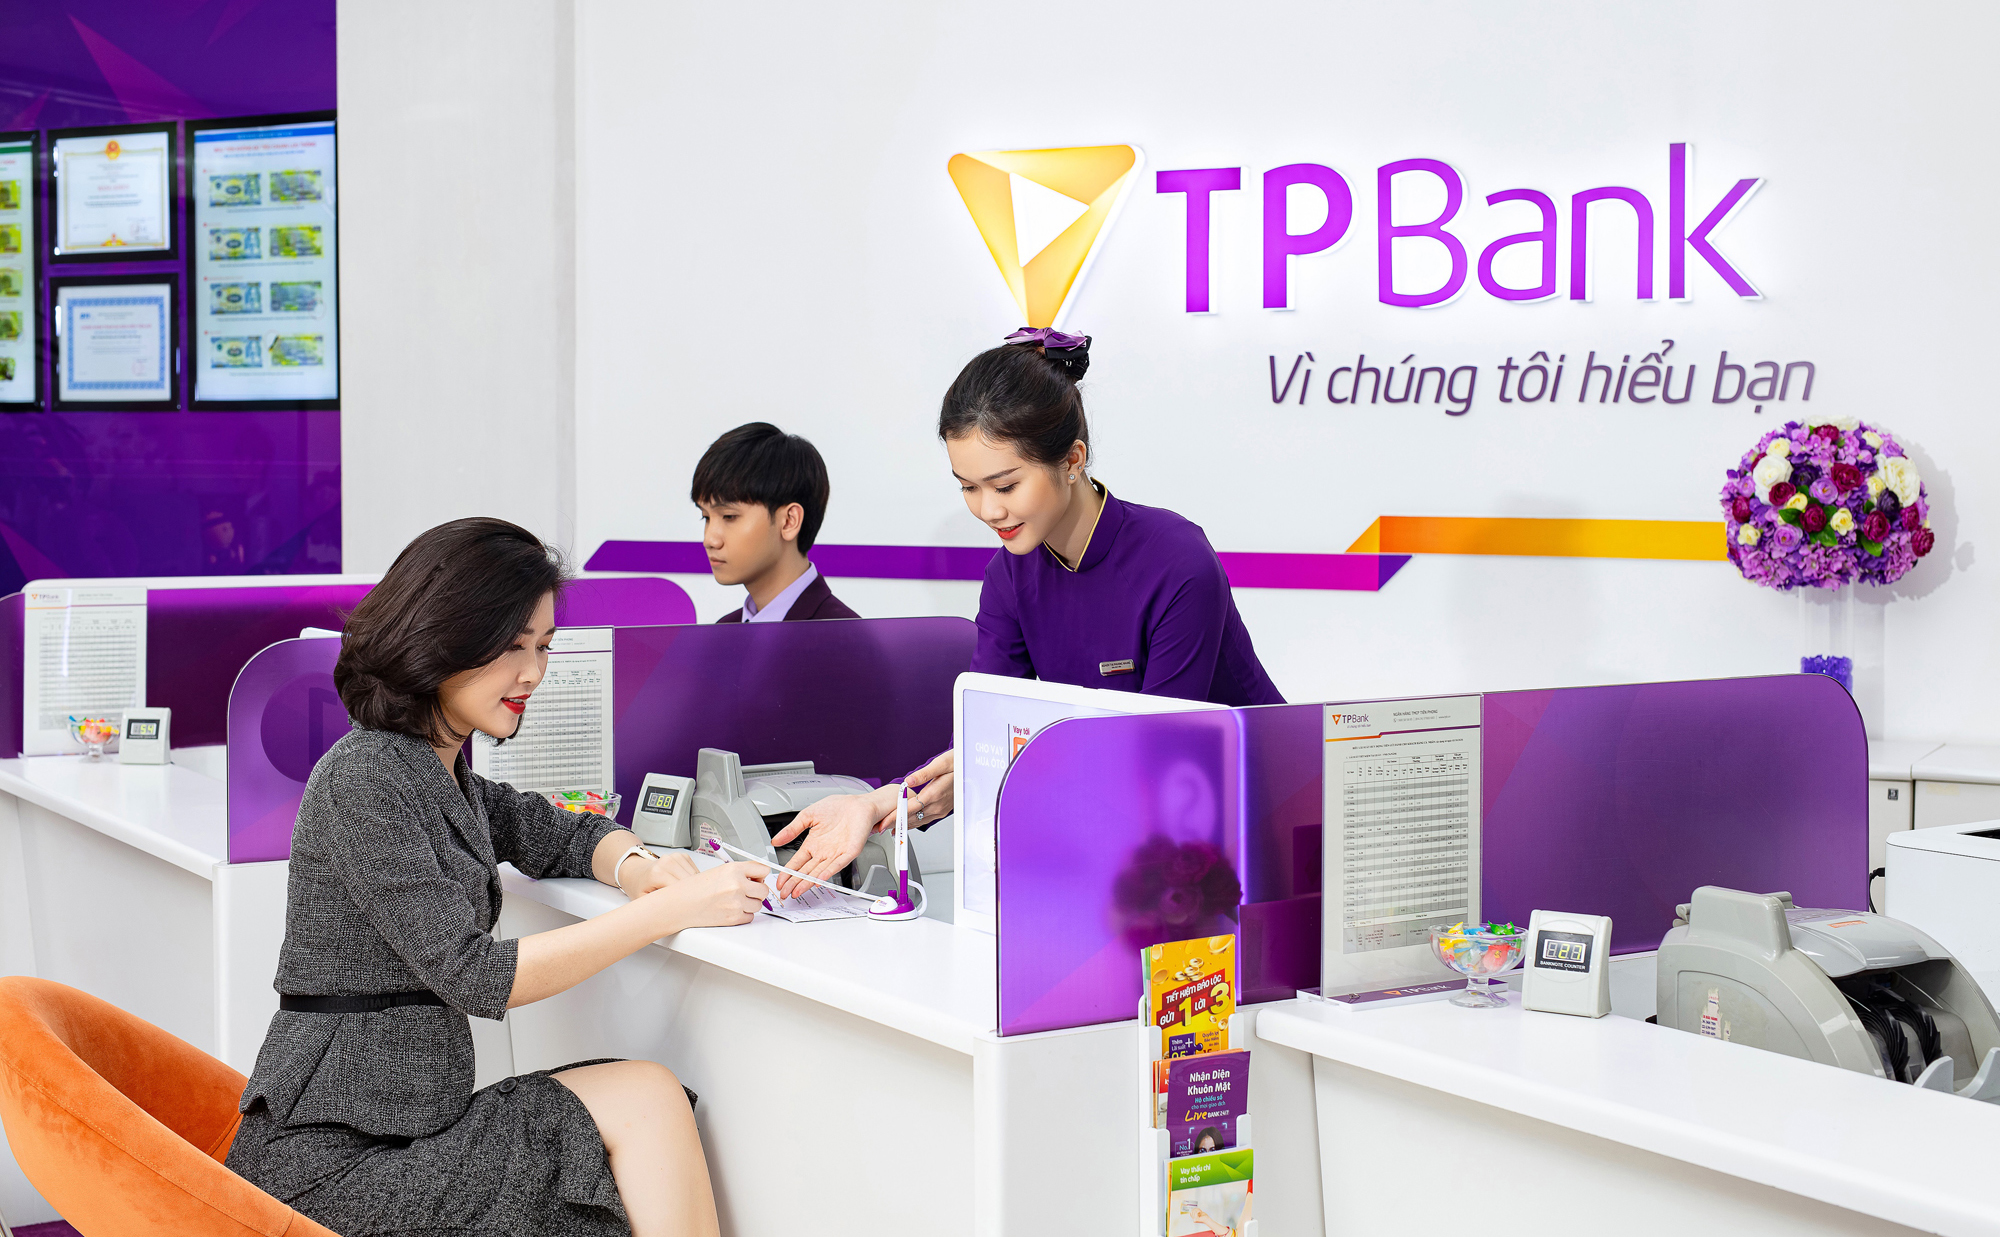  Mở tài khoản và nhập mã giới thiệu TPBank online 